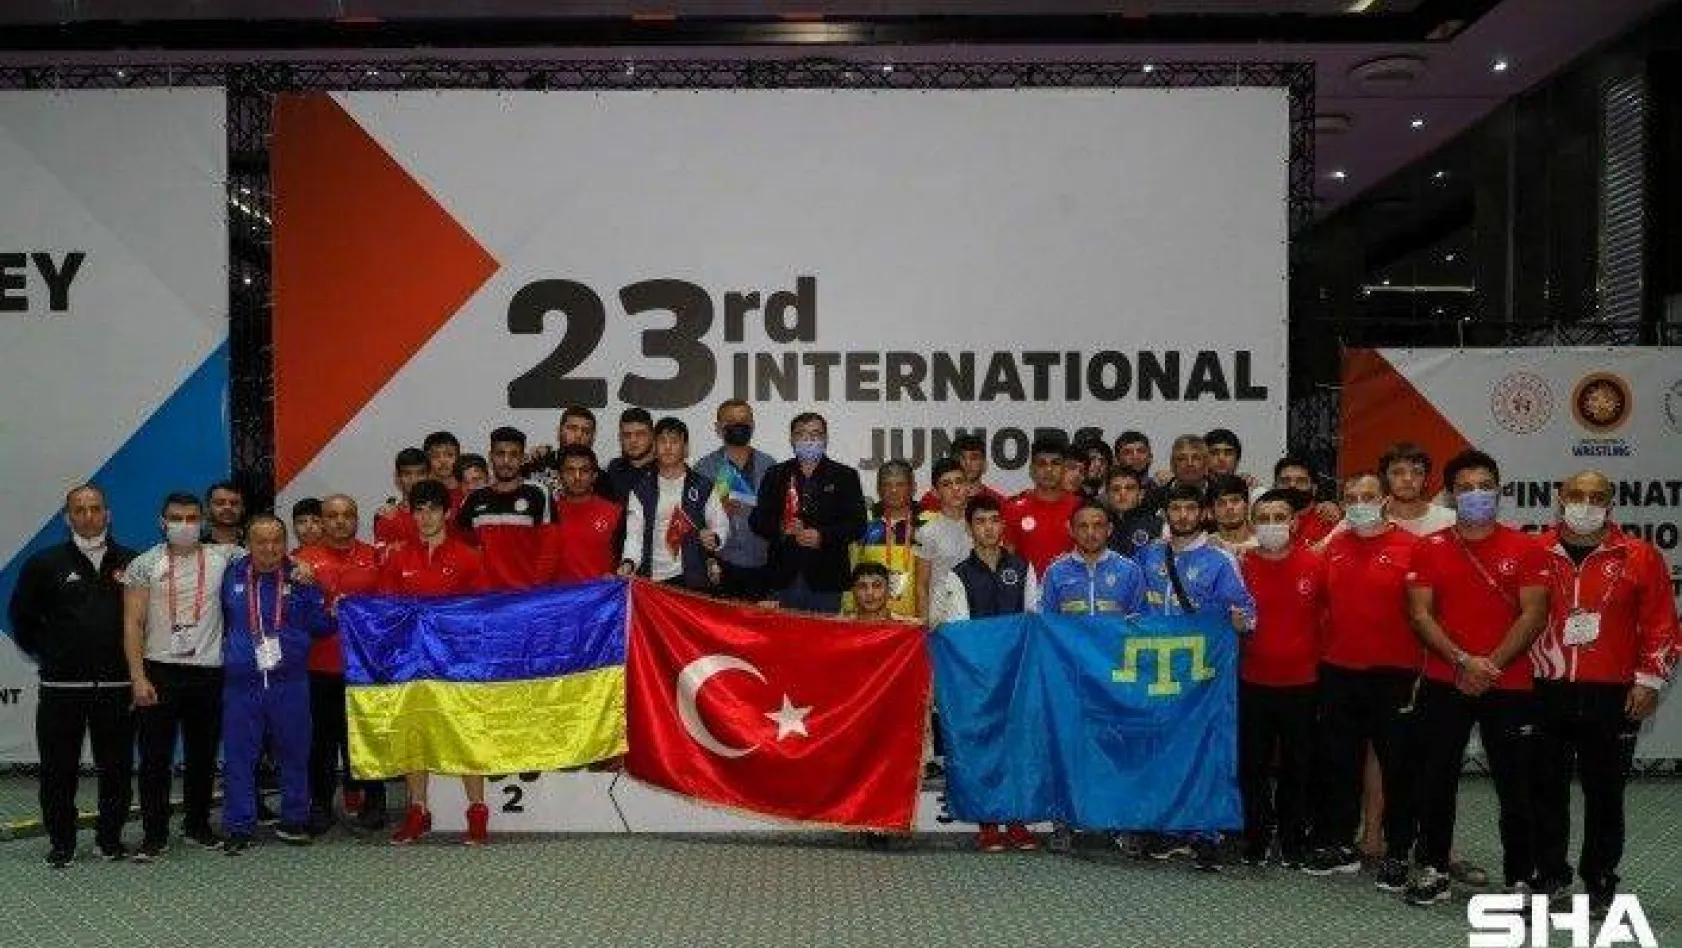 23. Uluslararası Gençler Şampiyonlar Güreş Turnuvası'nda Türkiye şampiyon oldu